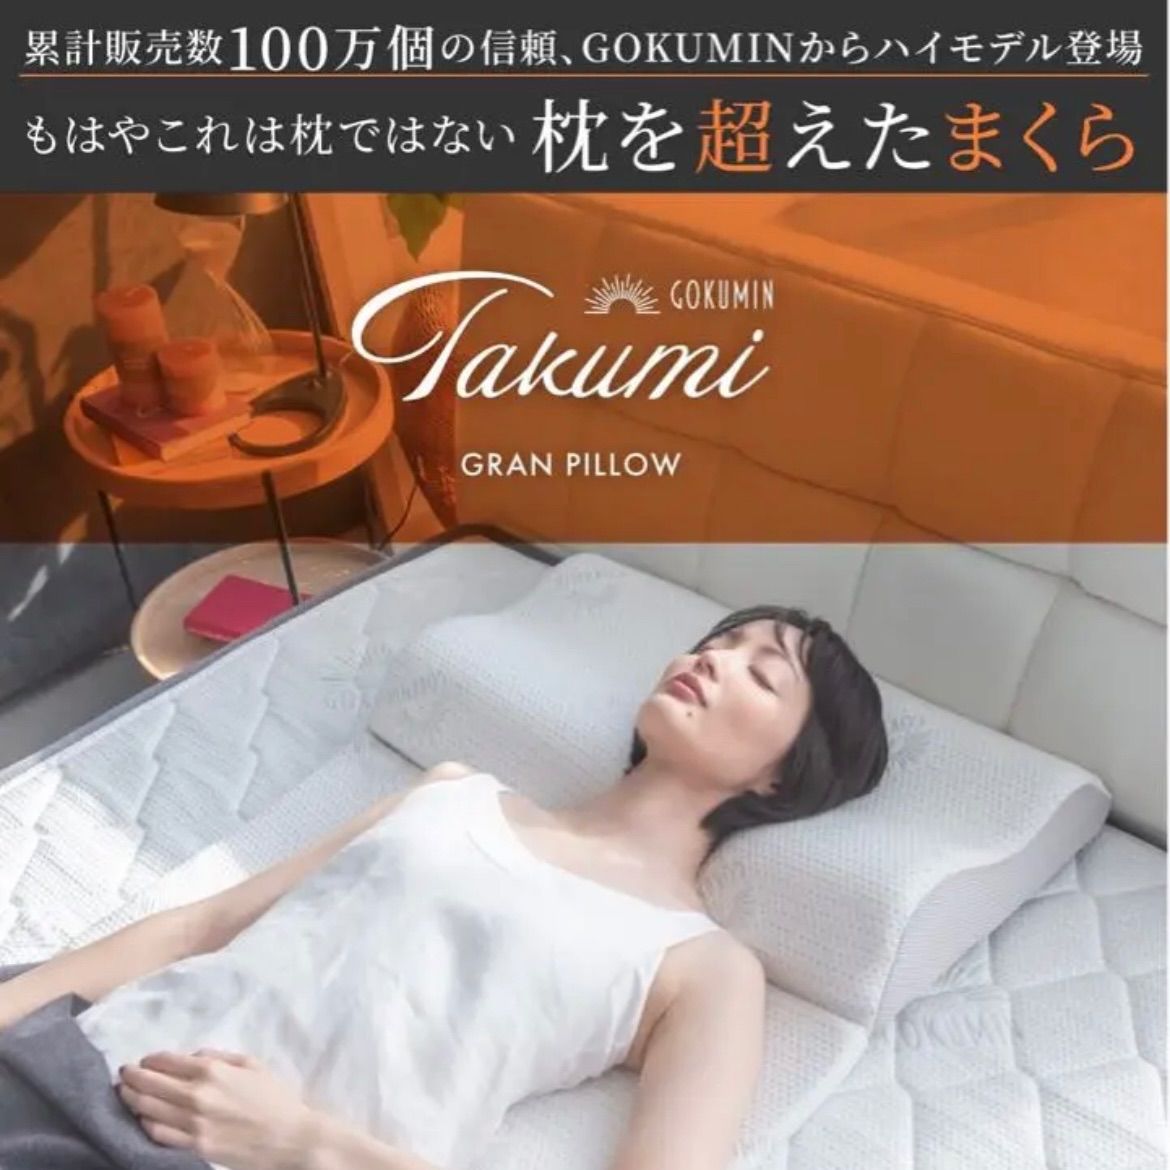 GOKUMIN takumi グランピロー ボディピロー 枕 まくら pillow 抗菌防臭